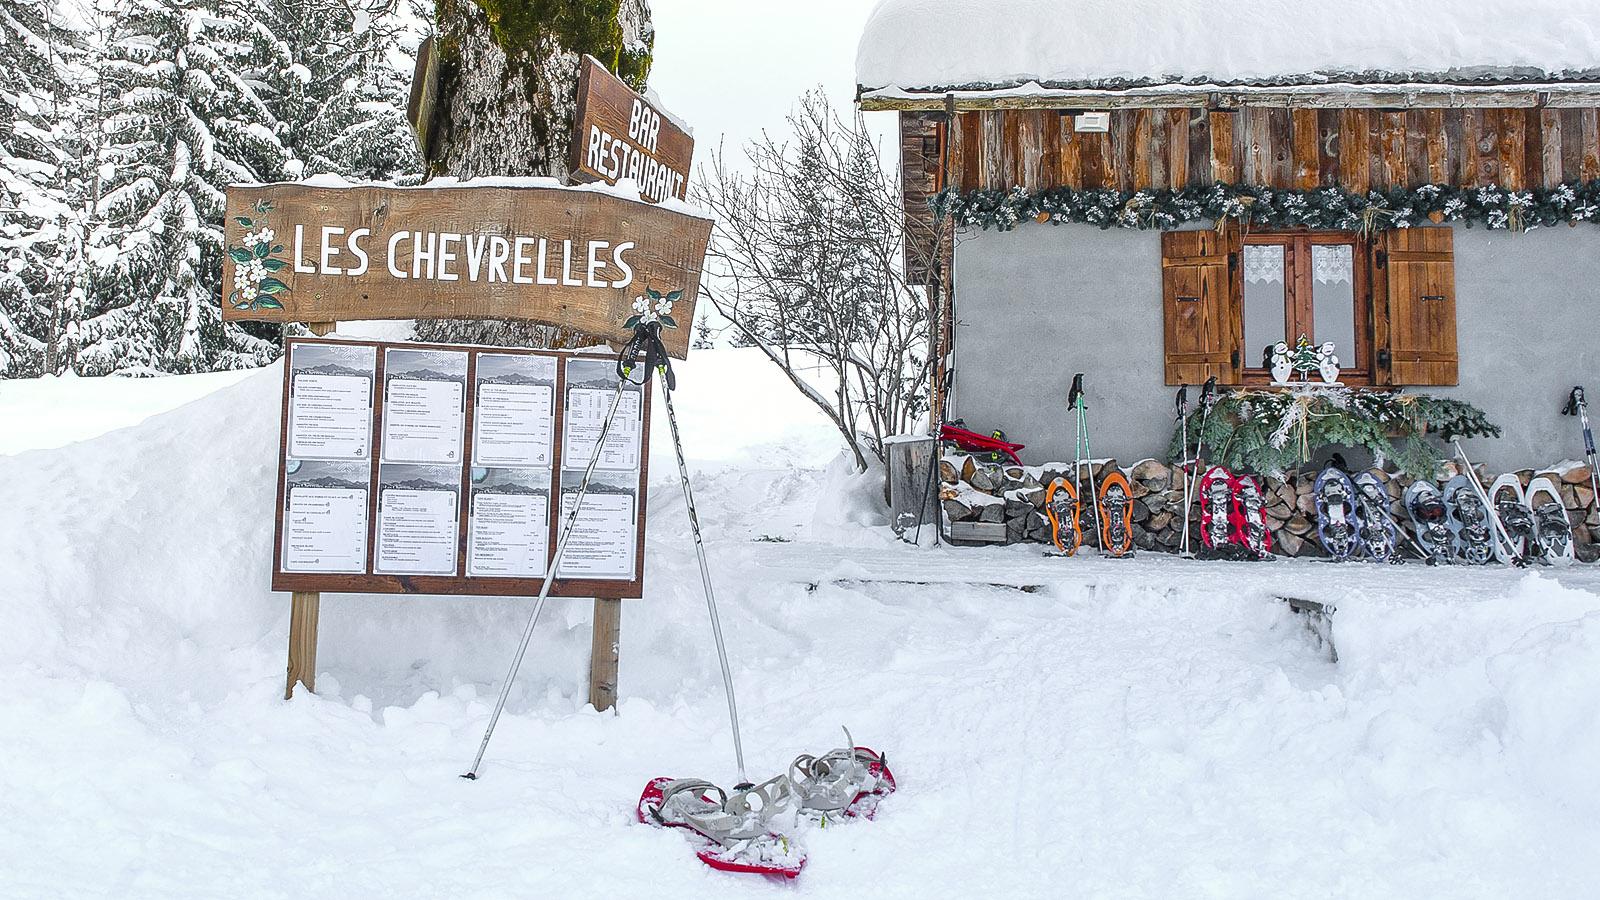 Berghütte Les Chevrelles. Foto: Hilke Maunder